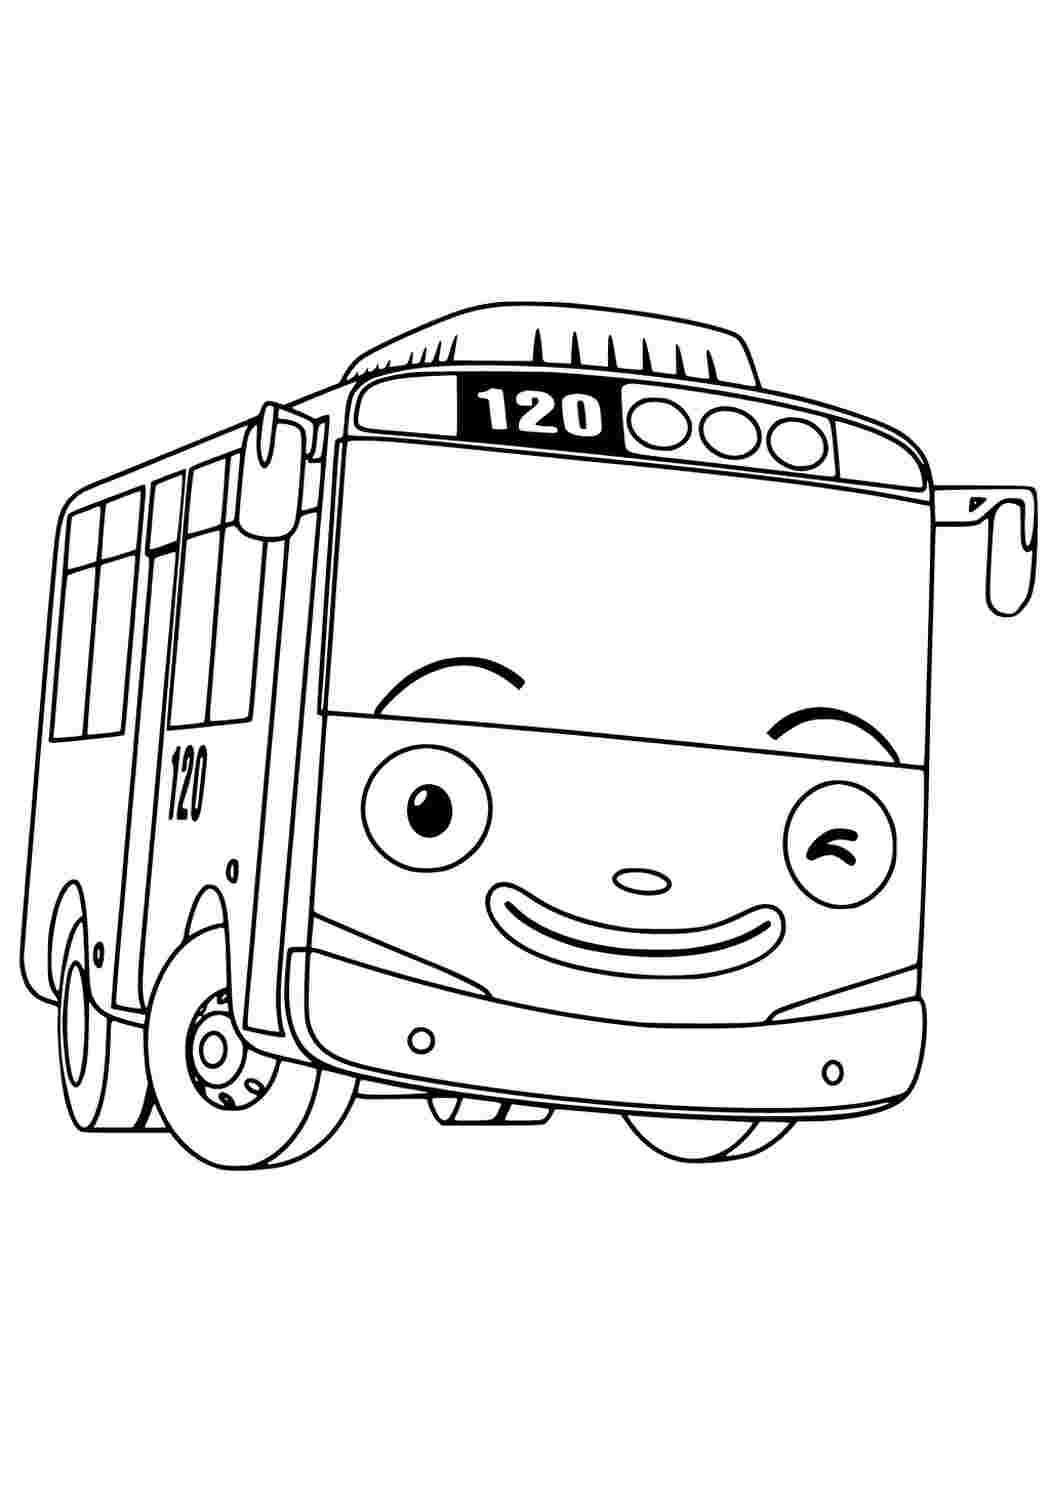 Игра Раскраска: Двухэтажный автобус (Double Decker Bus Coloring)